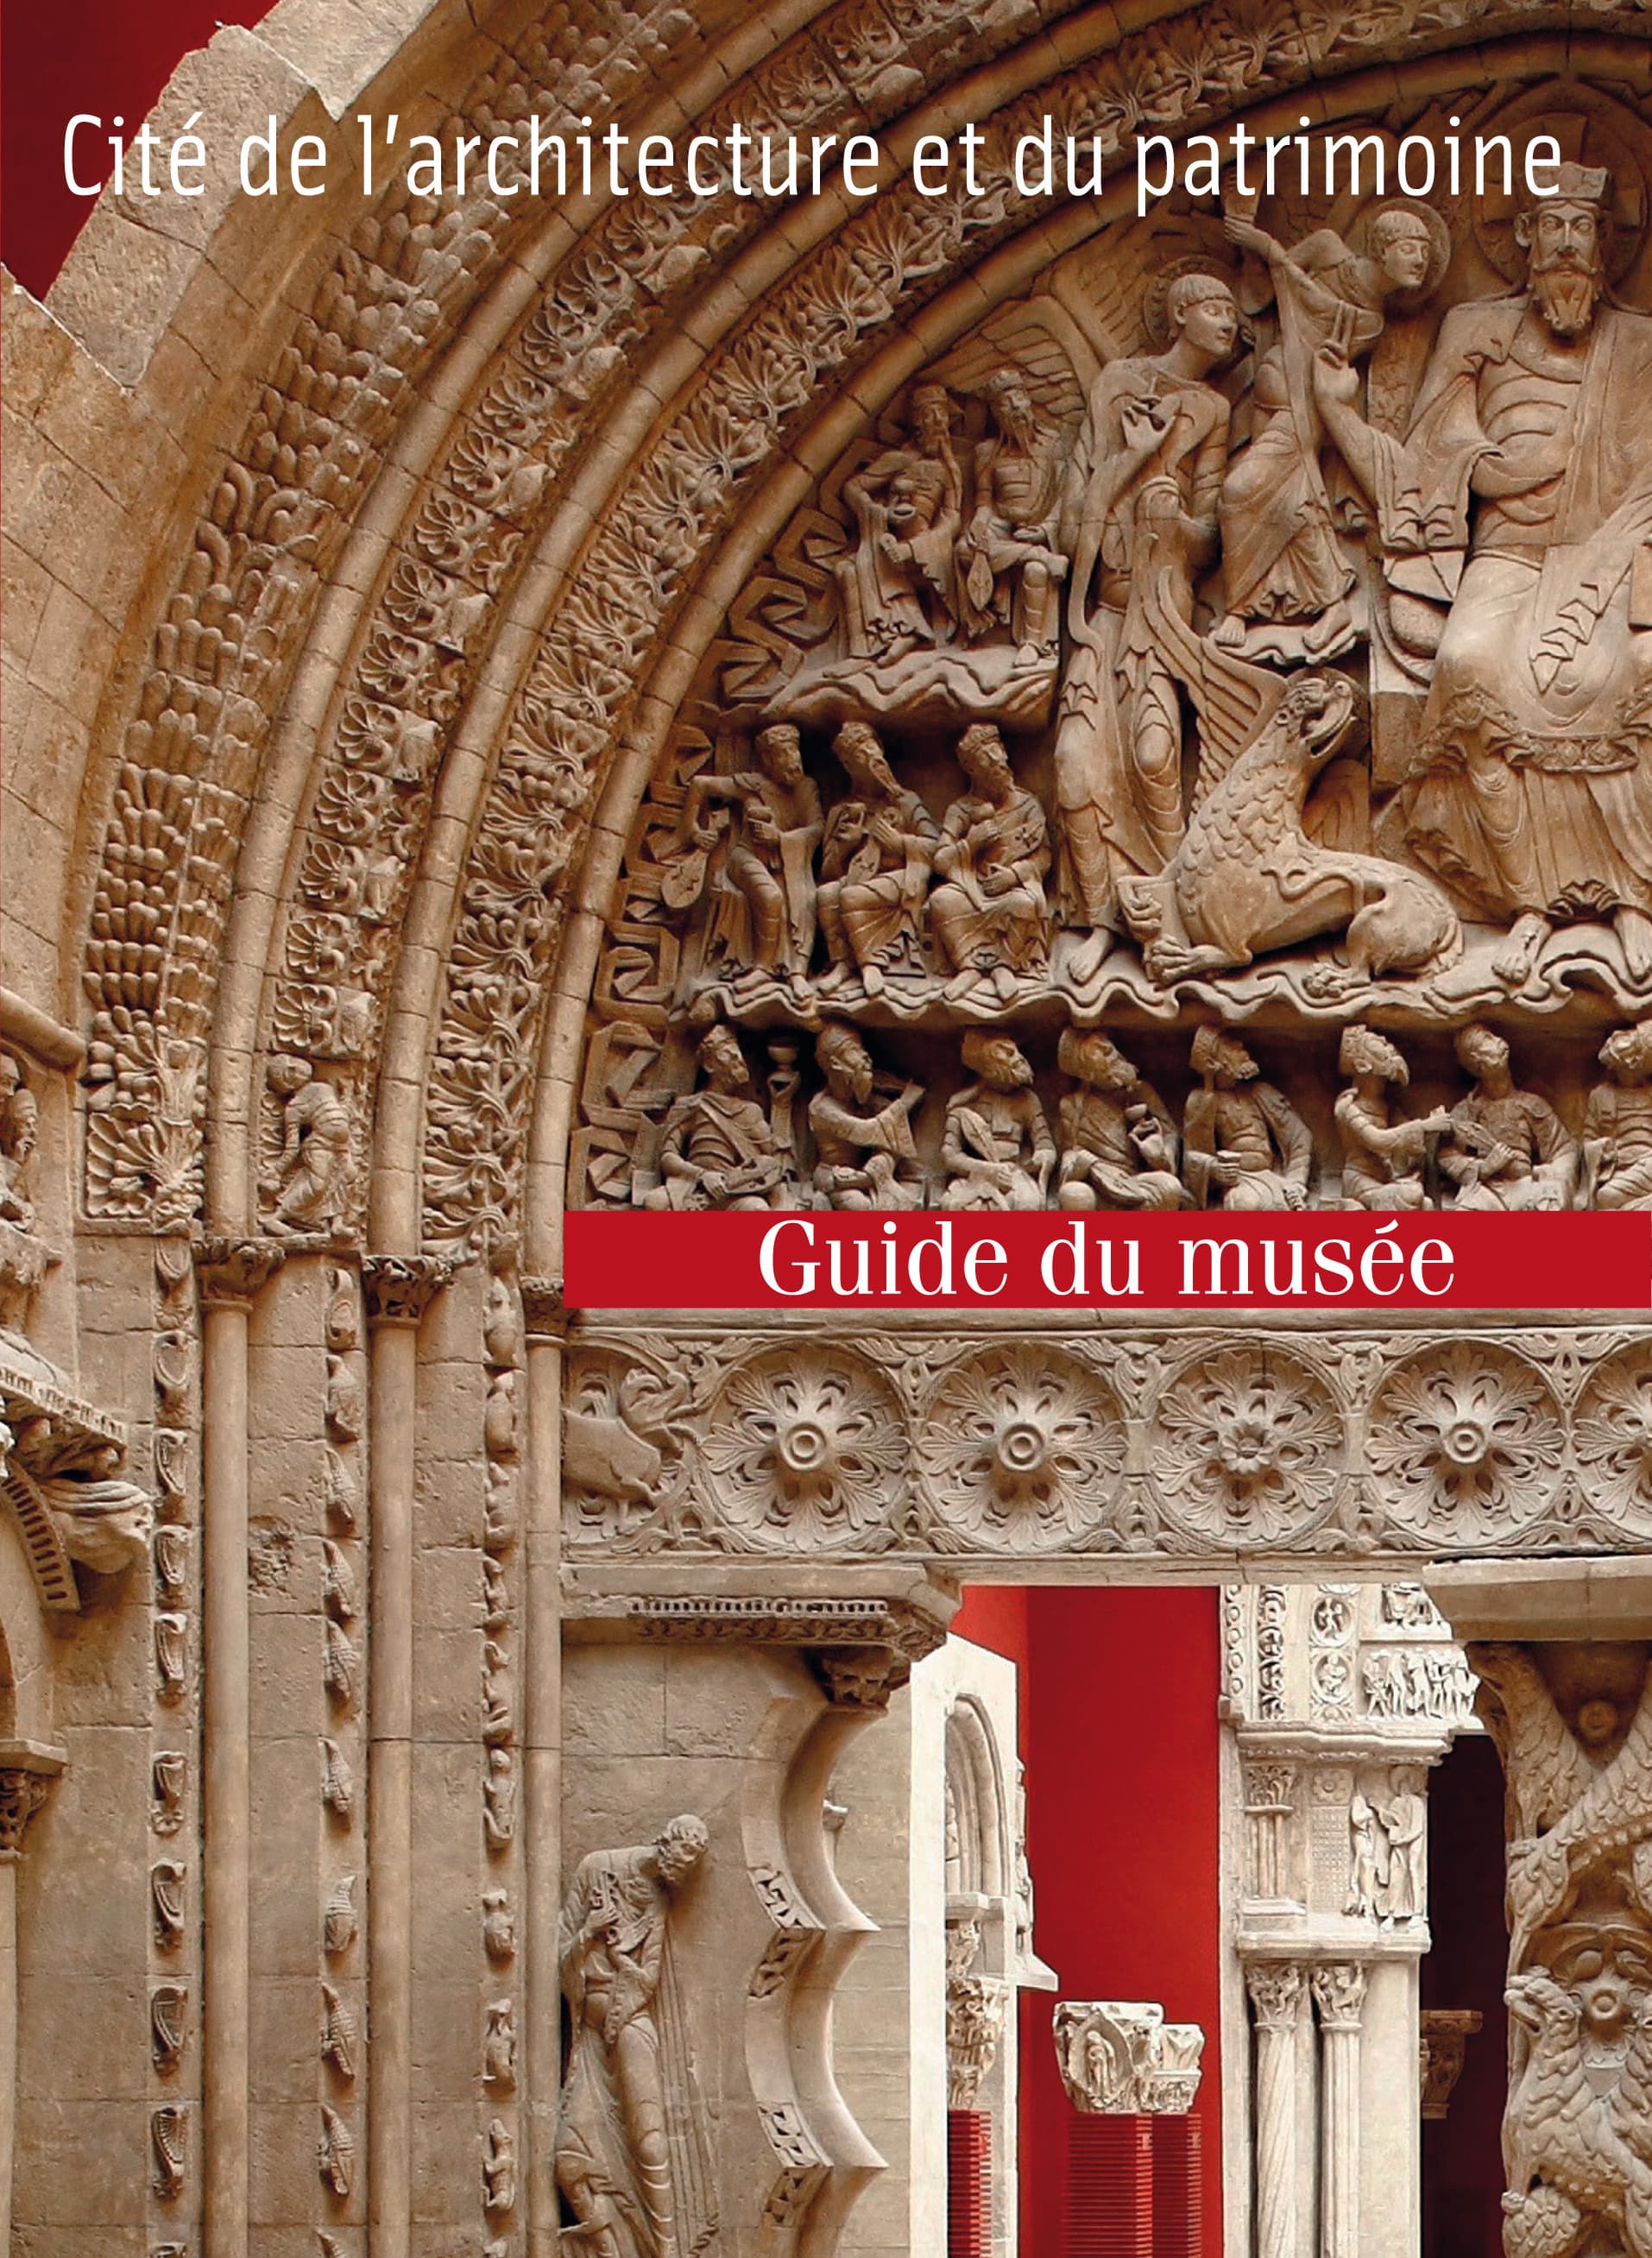 Guide du musée des Monuments français à la Cité de l'architecture et du patrimoine